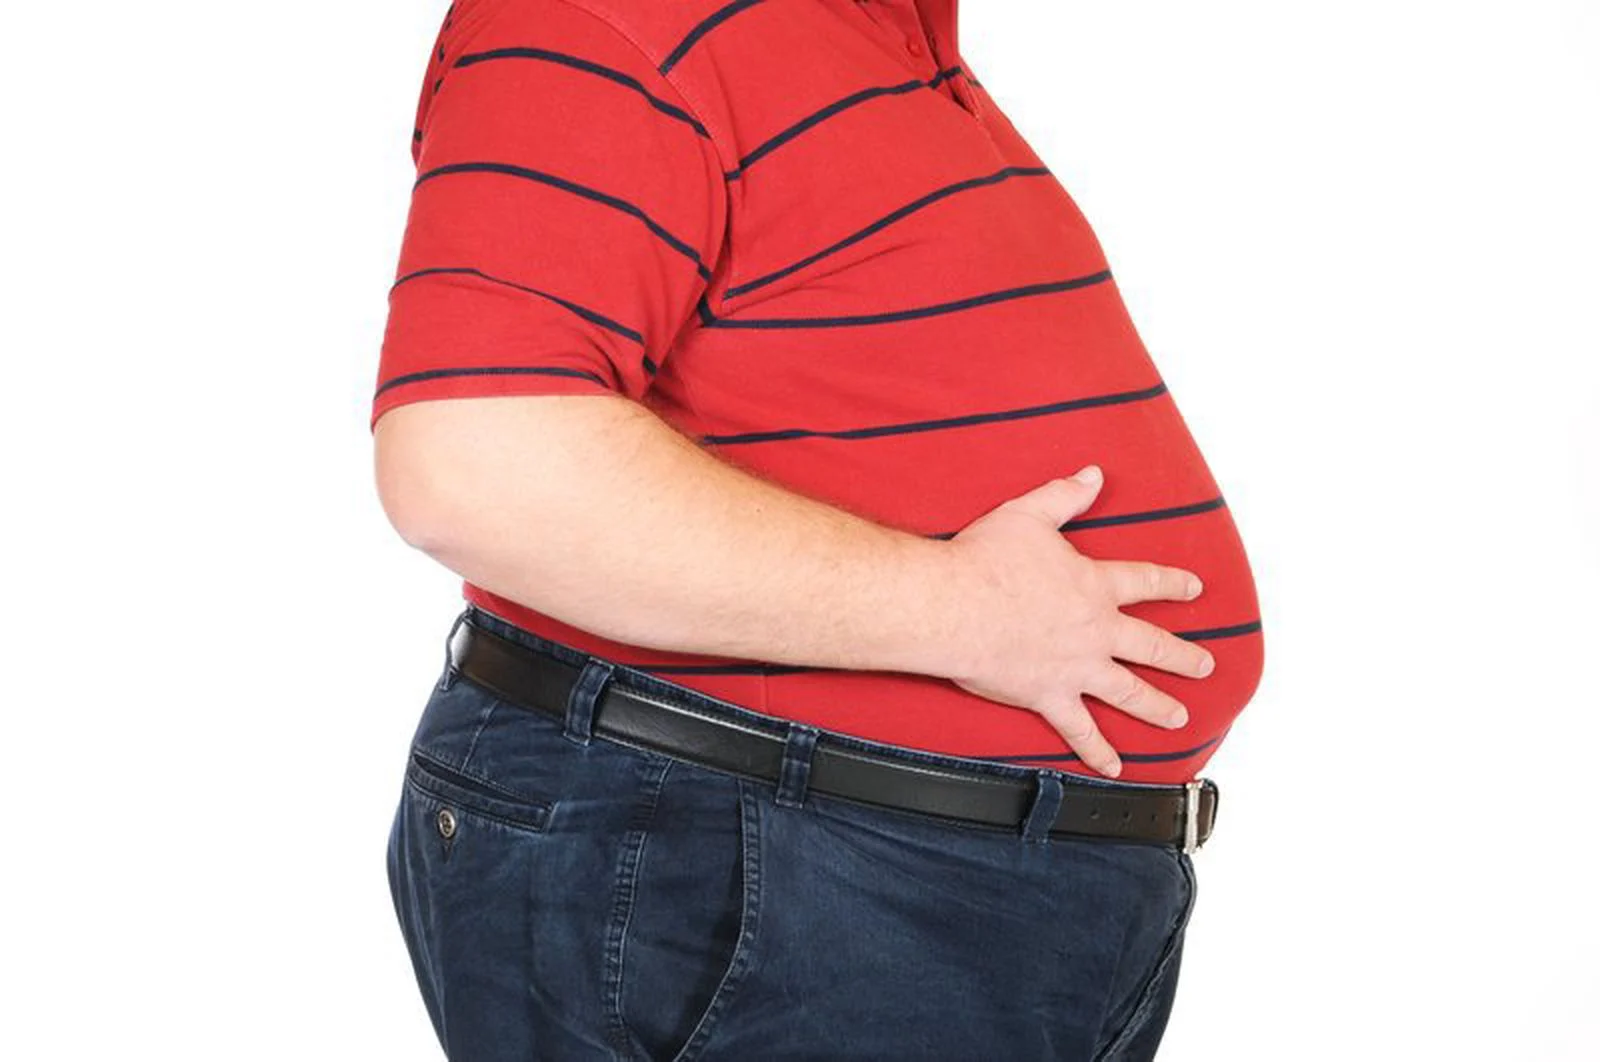 Béo phì: Người bị béo phì tỷ lệ gan nhiễm mỡ cao gấp nhiều lần so với người bình thường, vì cơ thể của người bị béo phì thường cung cấp 1 lượng chất béo vượt ngưỡng hấp thu của gan, gây nên việc tích tụ mỡ trong gan gây ra gan nhiễm mỡ